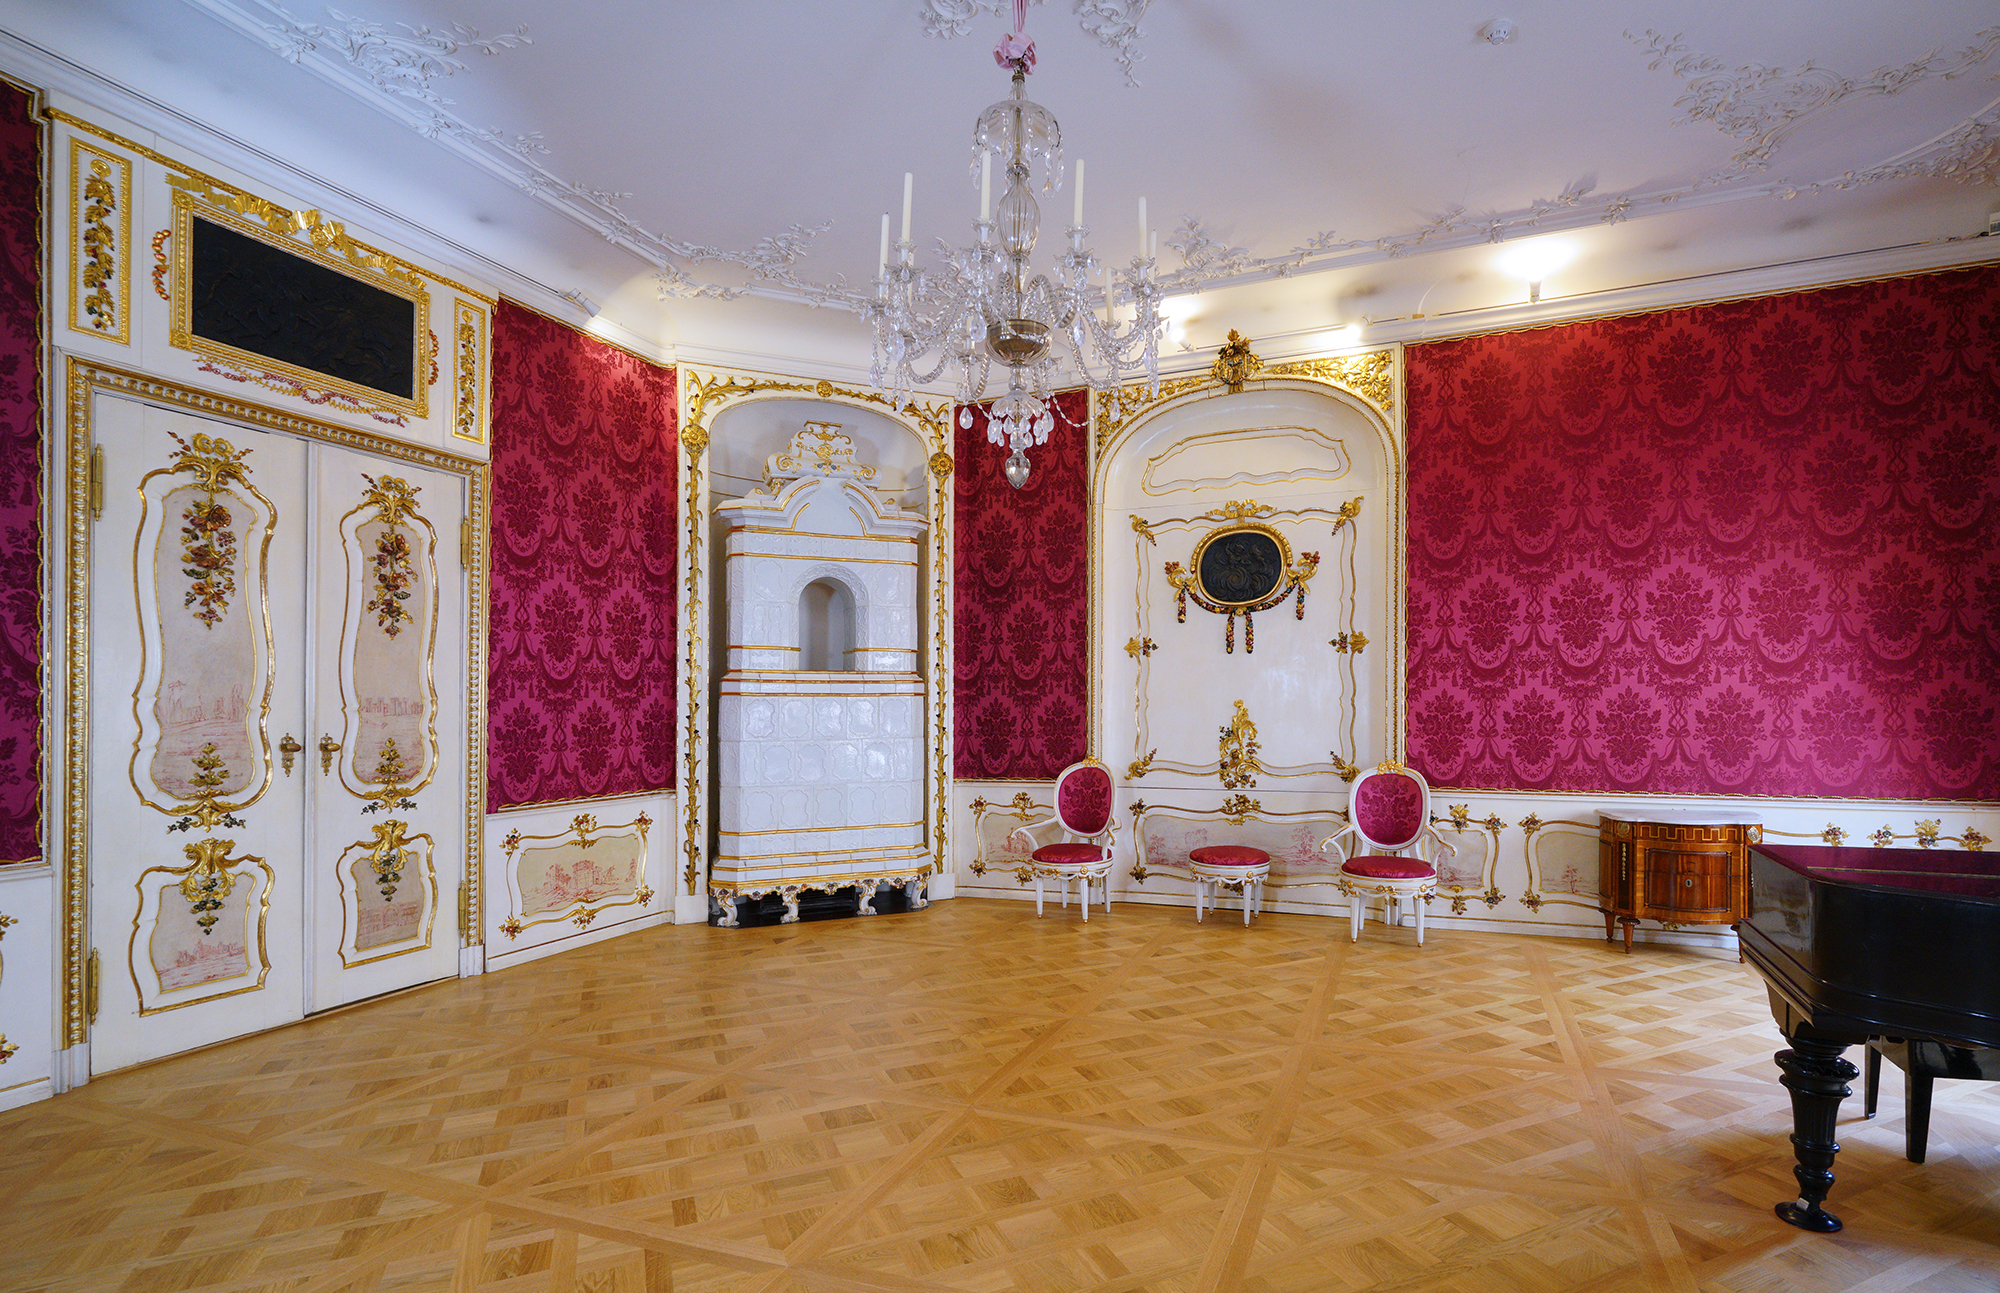 Salon Domu Uphagena. Ciemno-różowe tapety, złocone lamperie i drzwi. W rogu biały piec kaflowy, obok dwa krzesła i taboret.